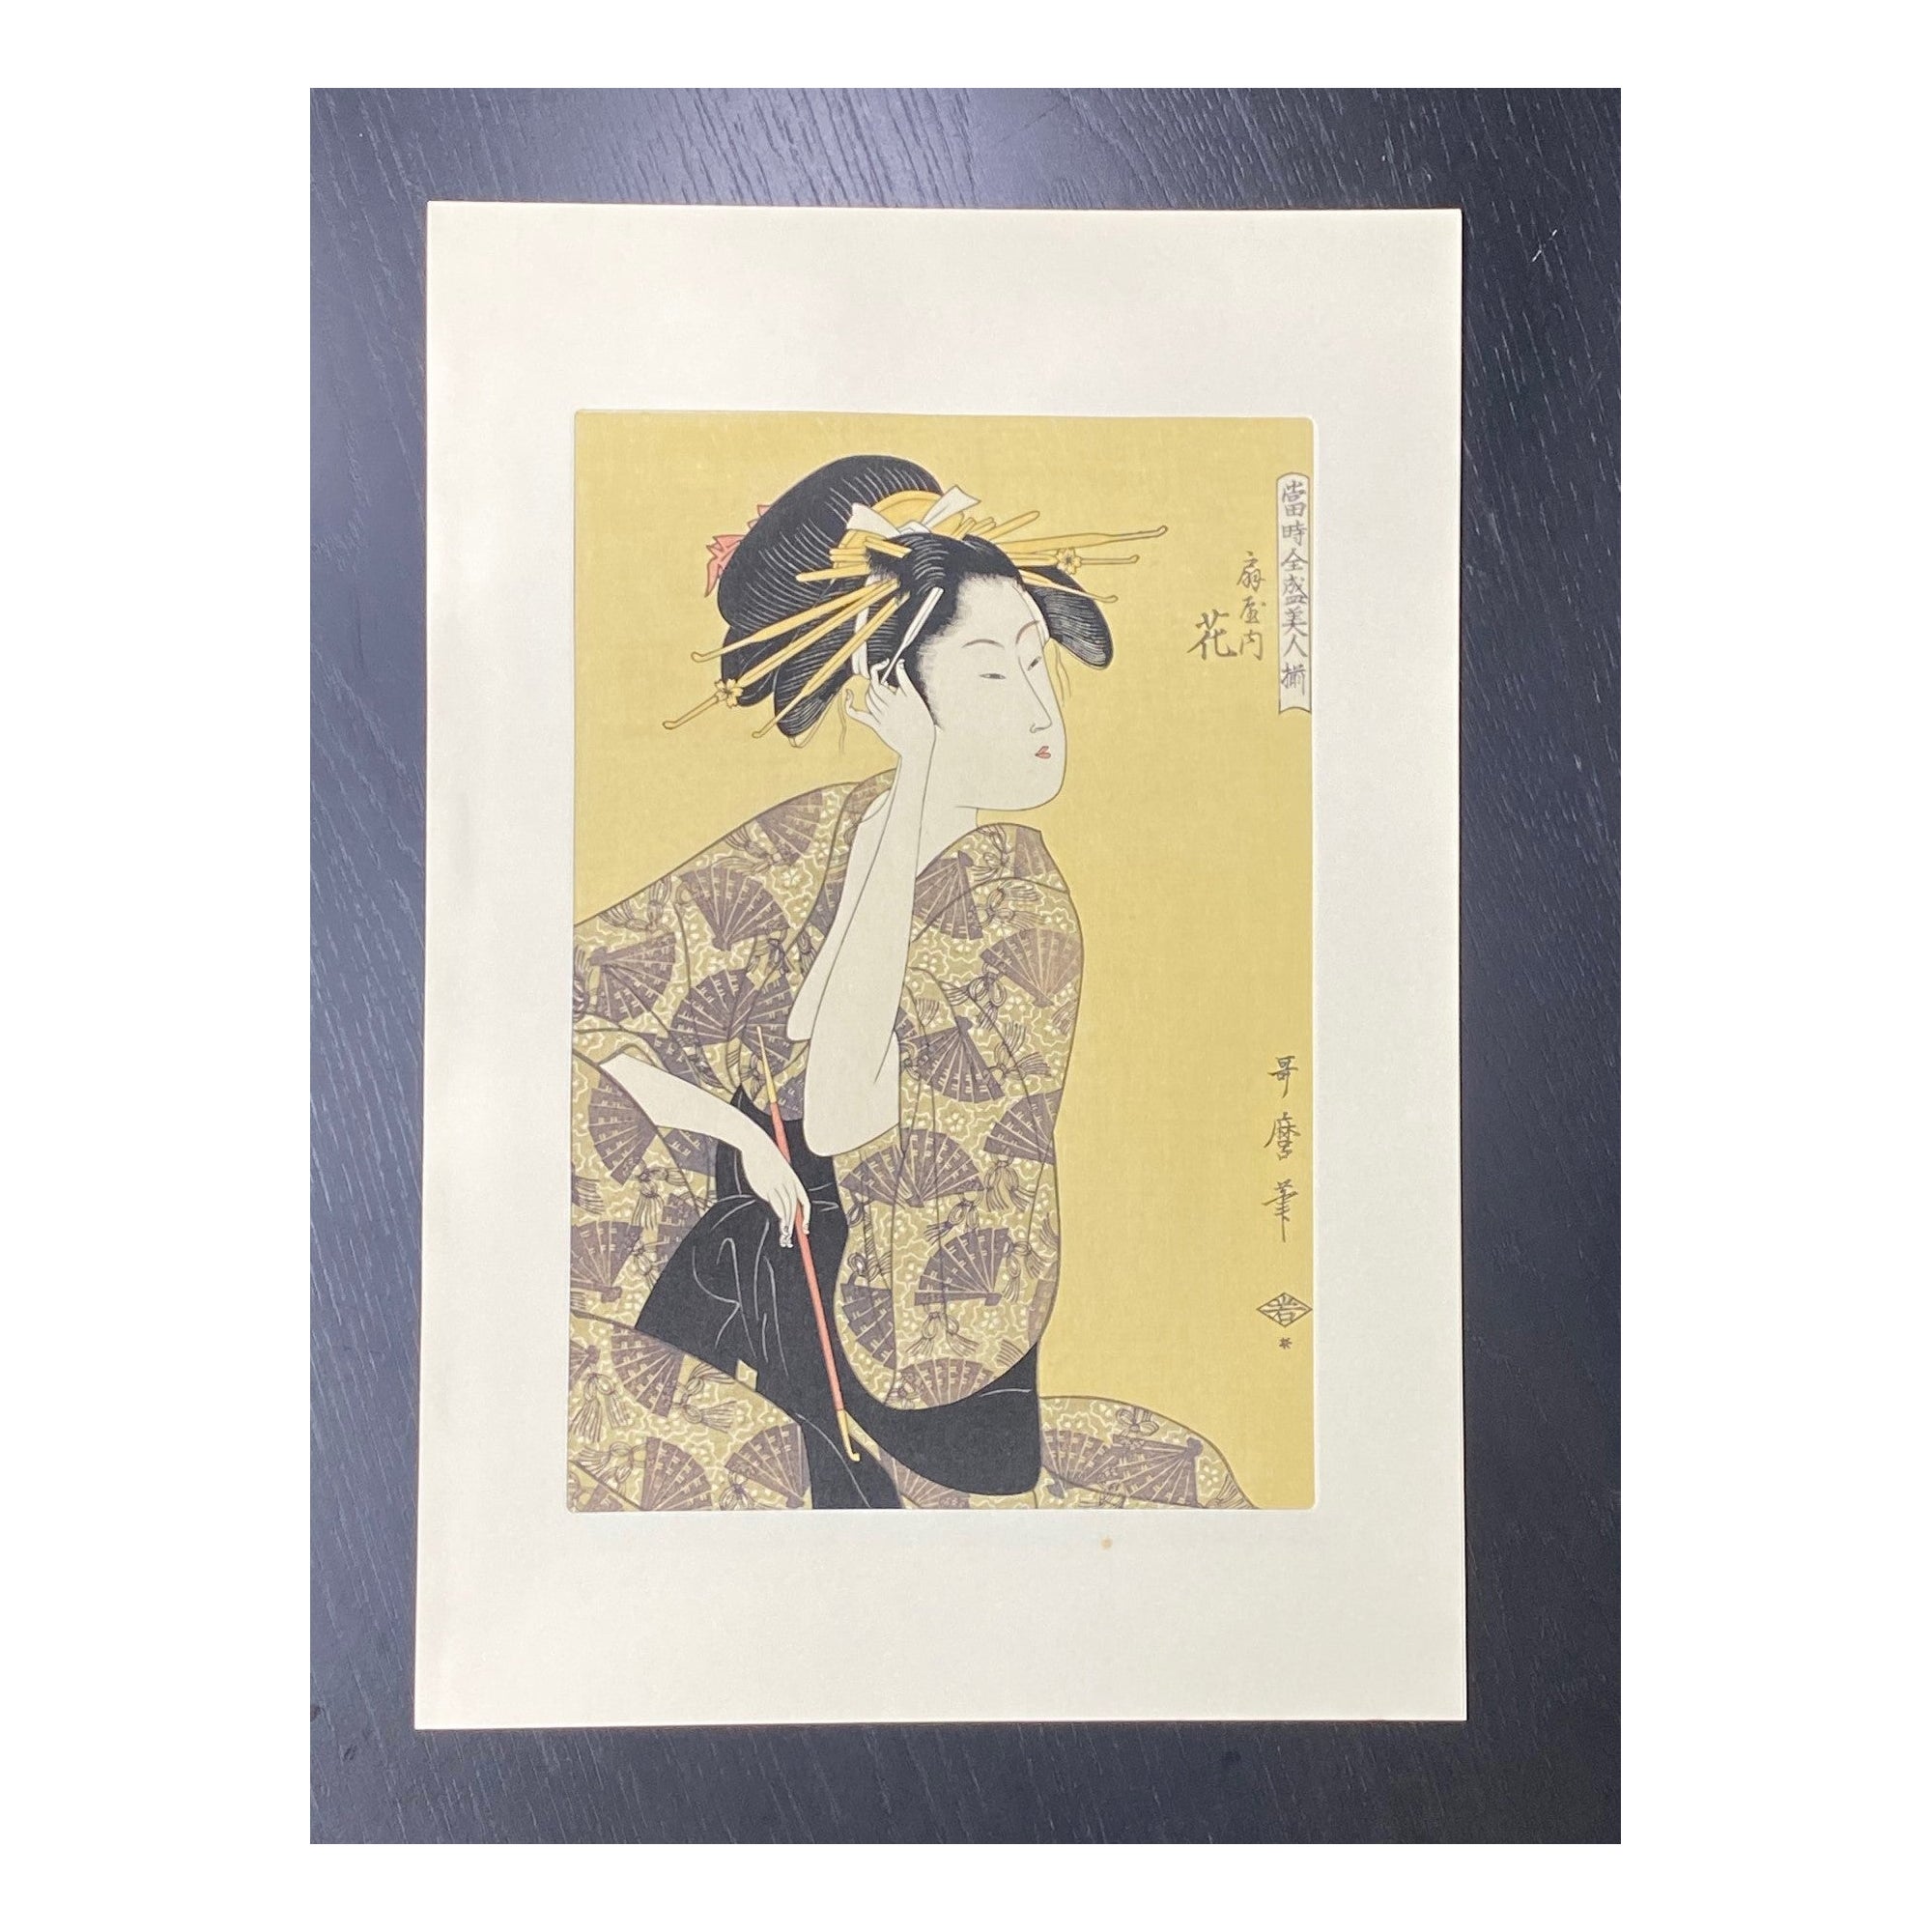 Japanischer Holzschnitt der Edo Geisha-Frau mit gelben Haarnadeln und Opiumpfeifen